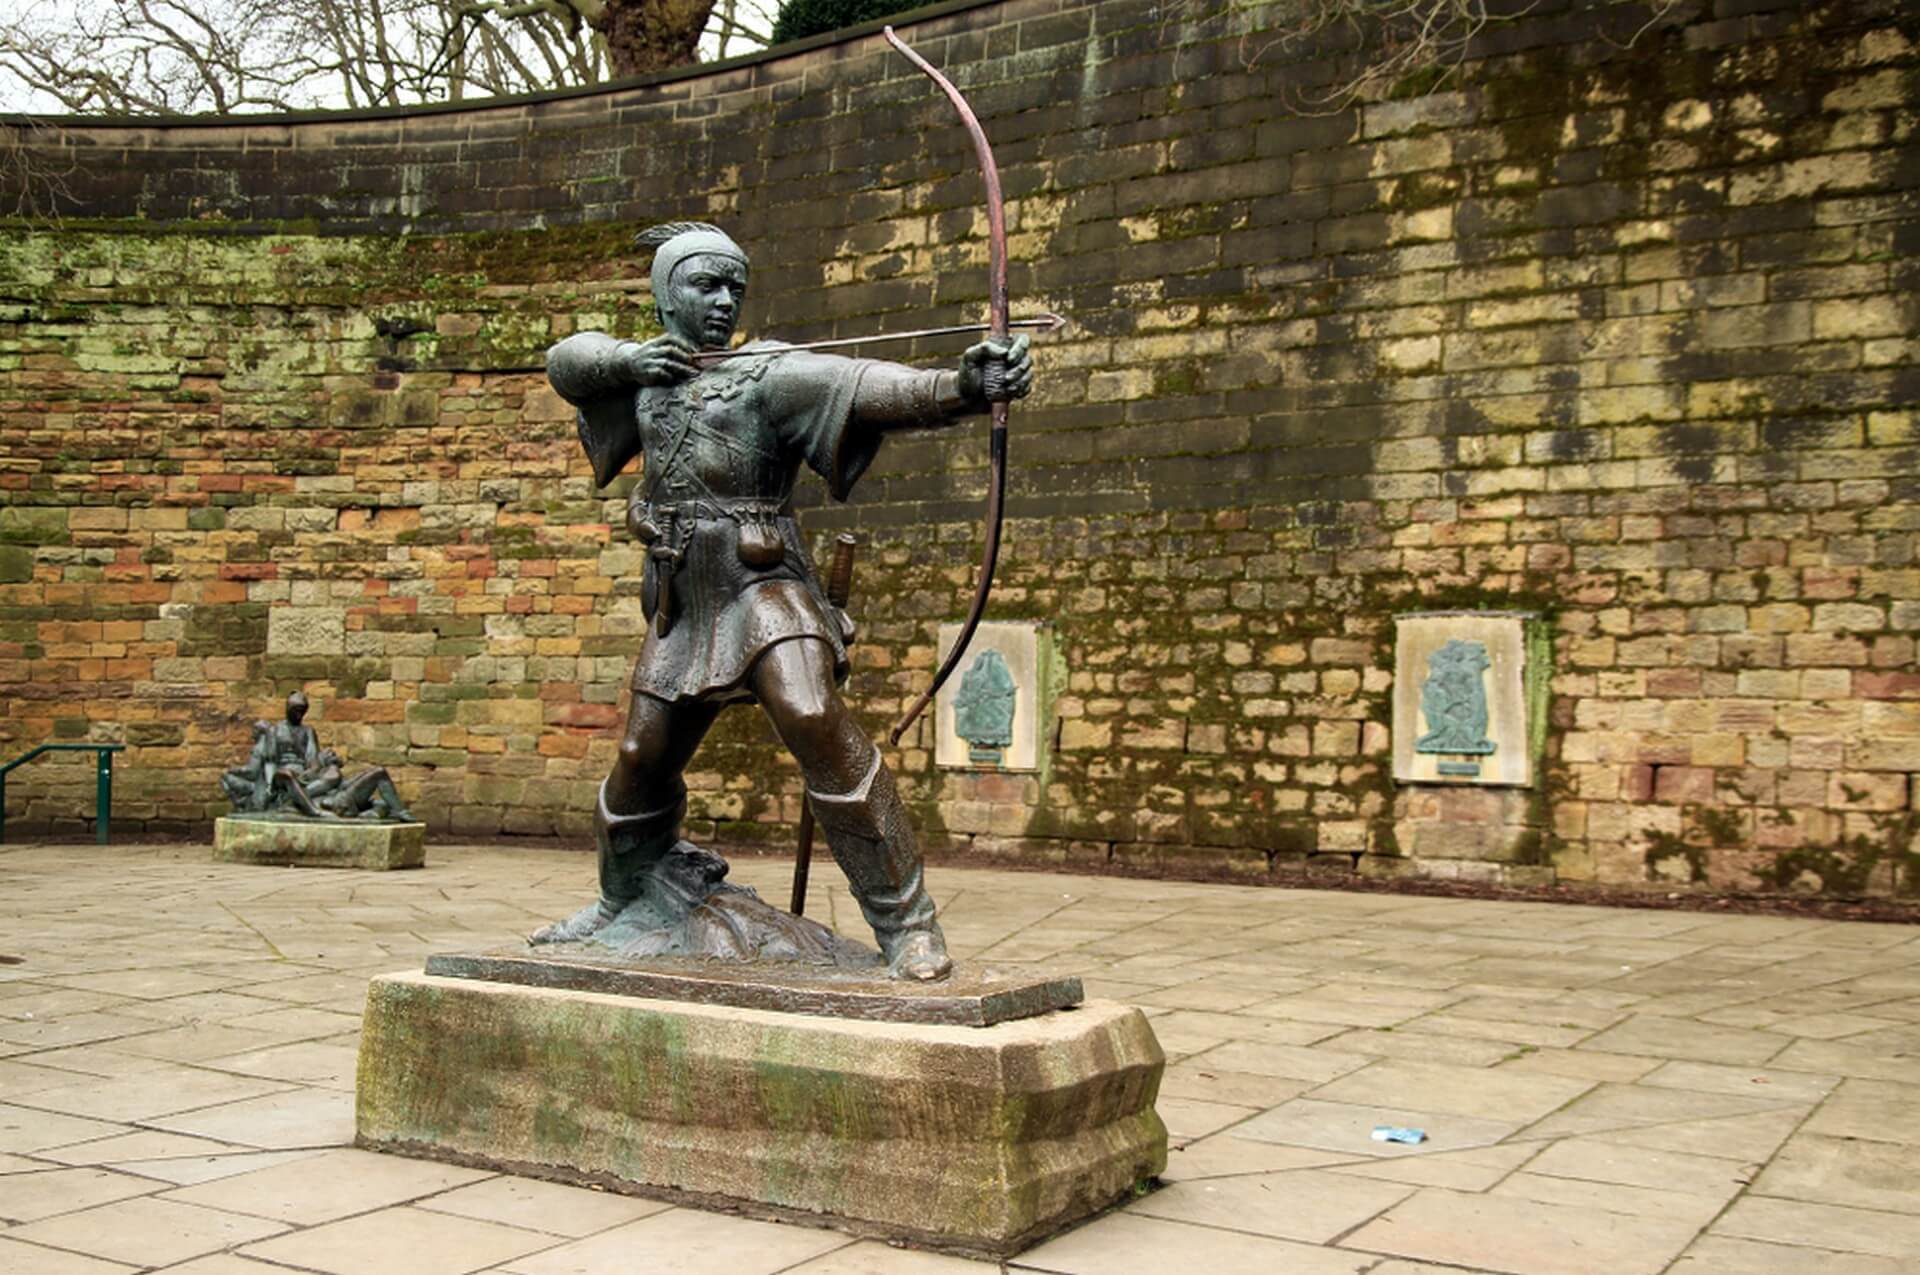 Nottingham Regno Unito - 01 aprile 2018:Castello nella città del leggendario fuorilegge Robin Hood